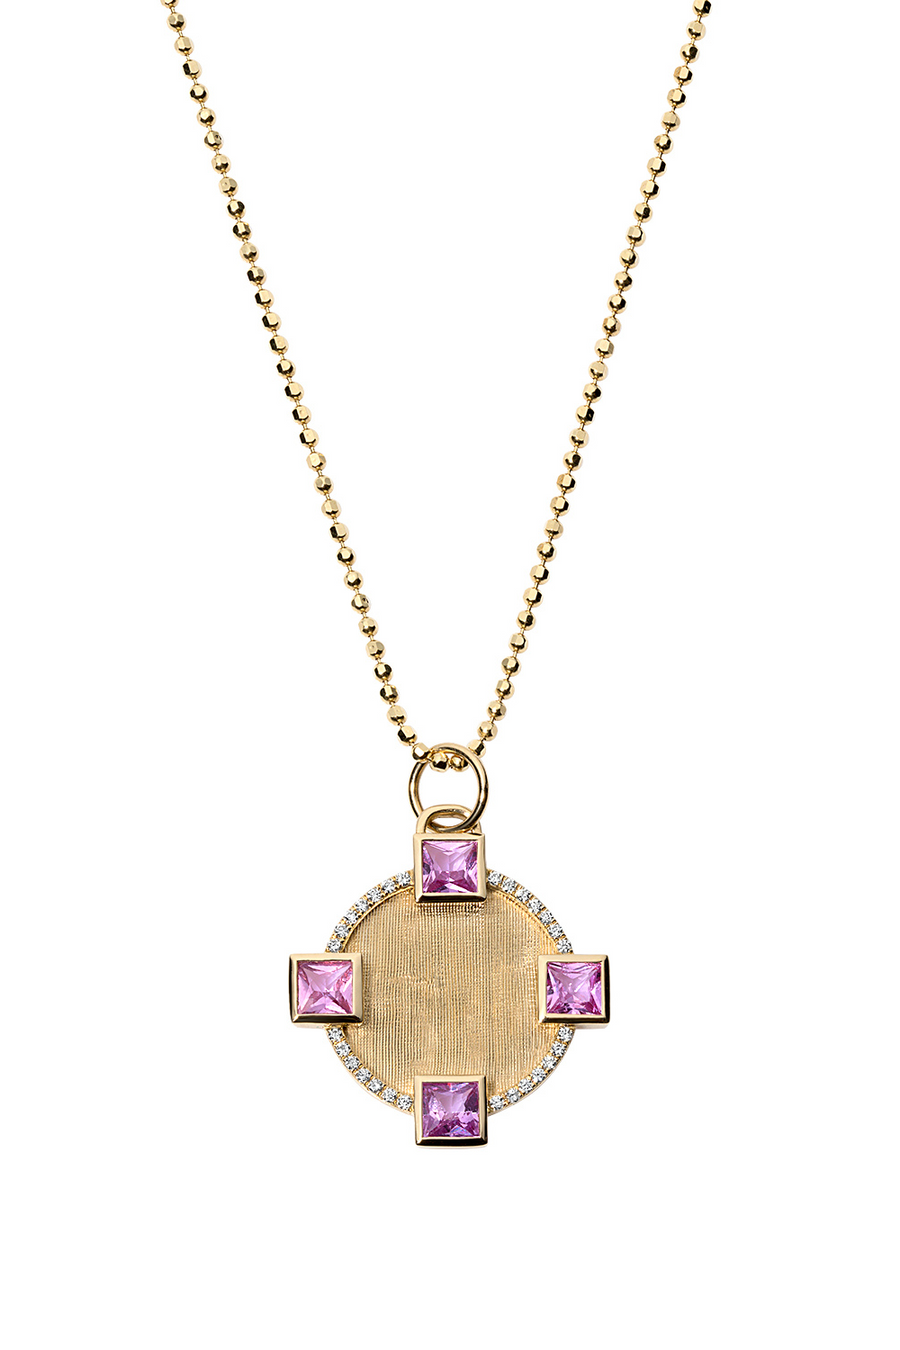 Pink sapphire round pendant in florentine 18k gold.